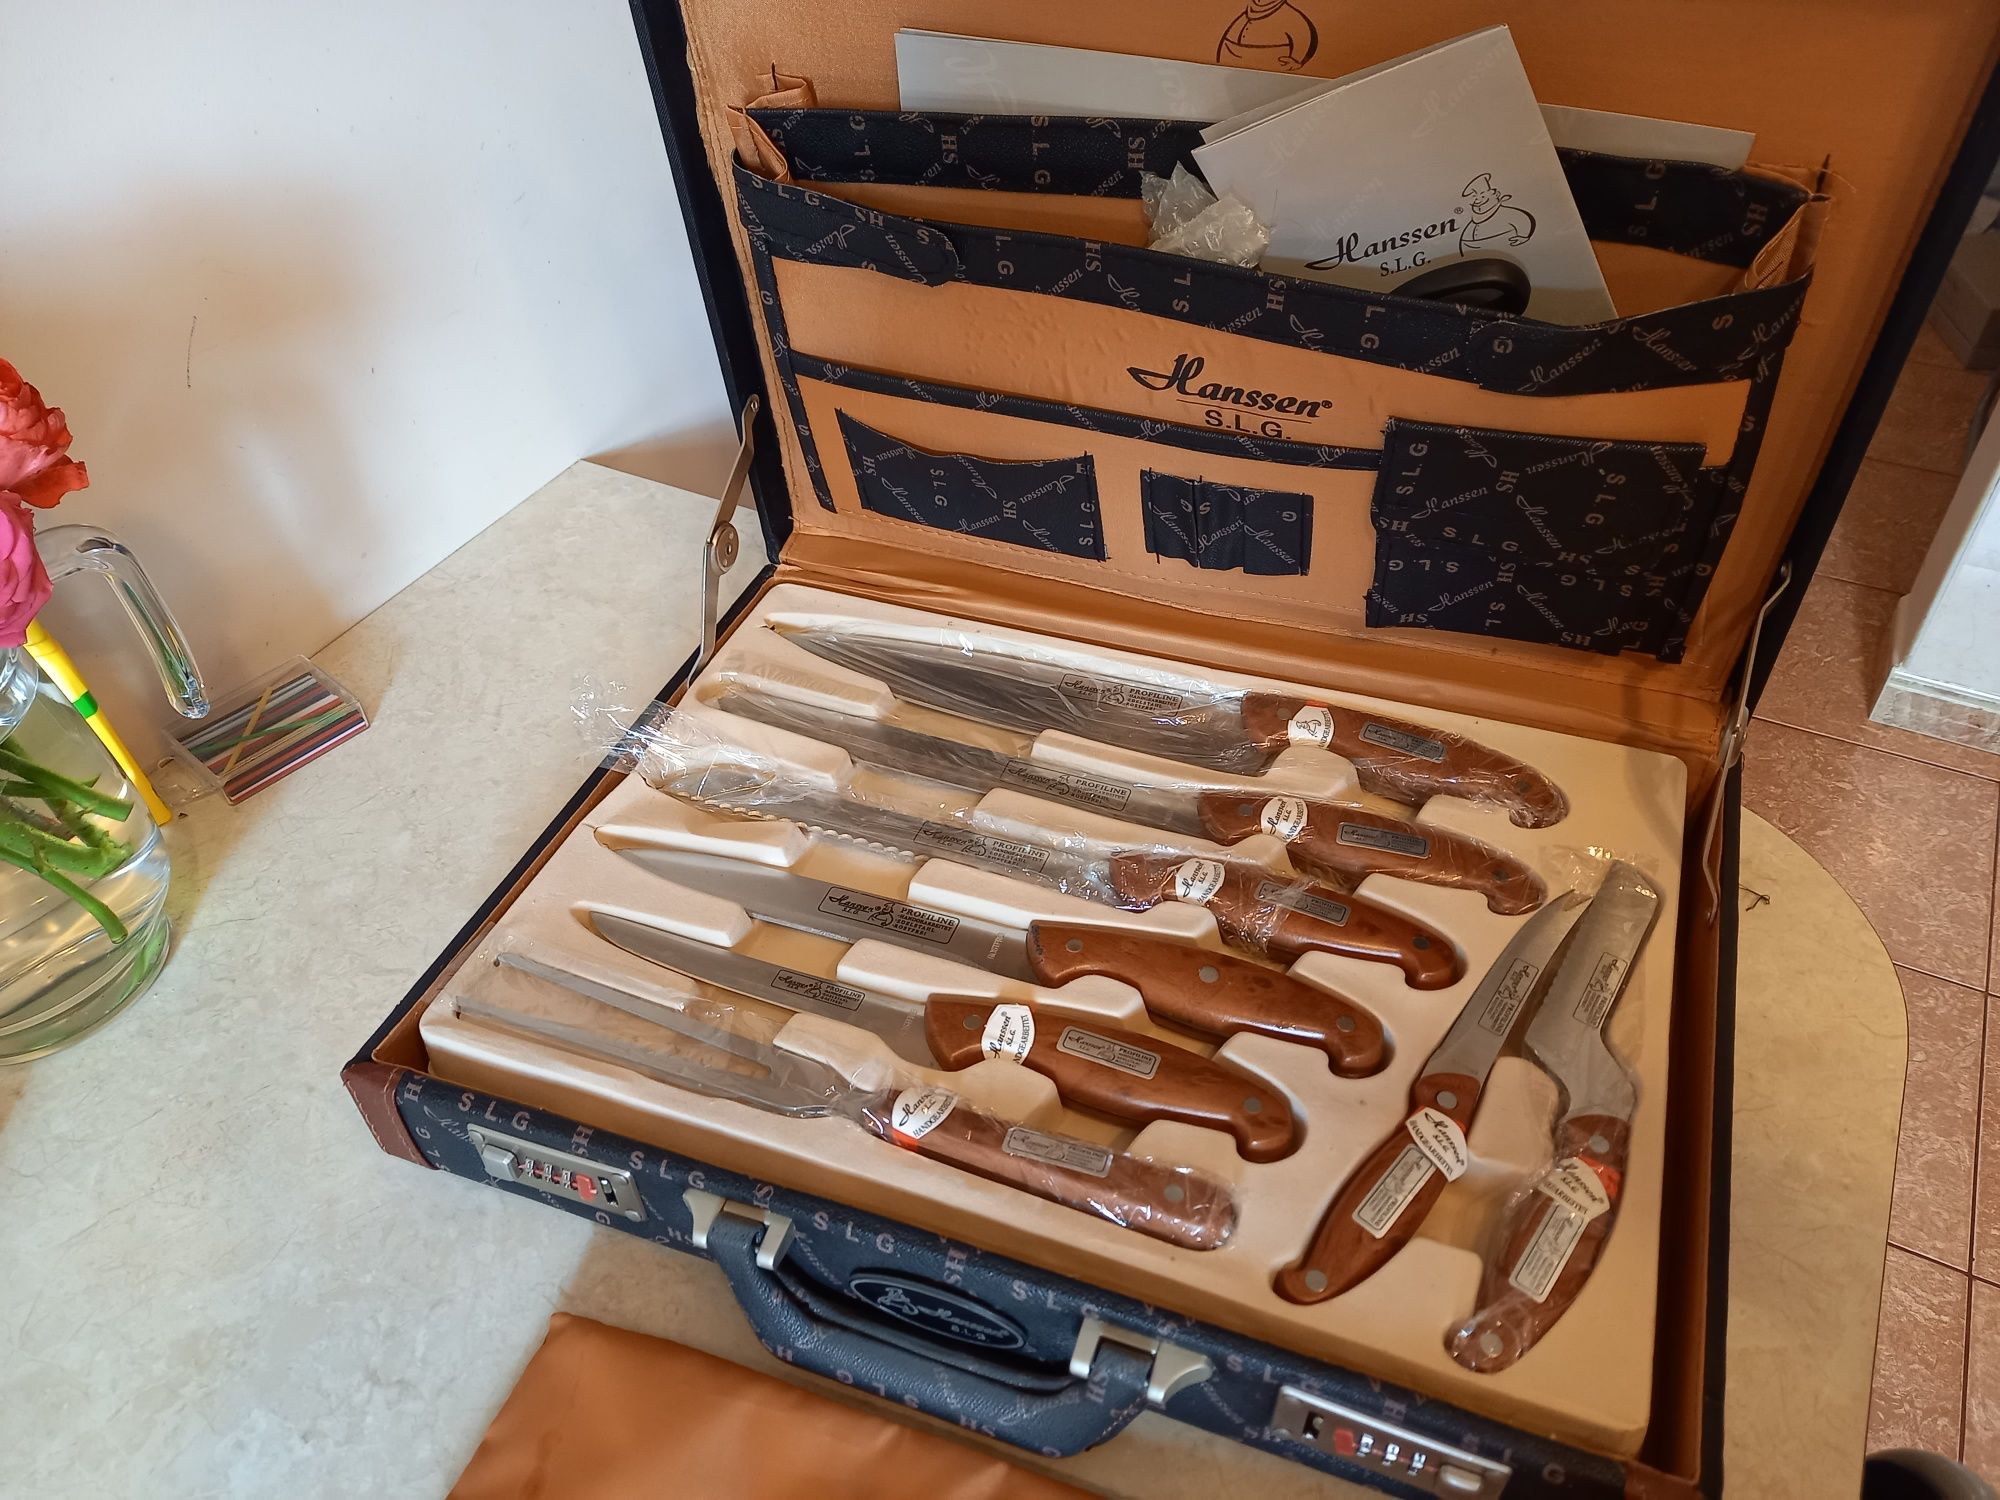 Hanssen noże w walizce zestaw noży w OKAZJA ! Certyfikat 20 lat